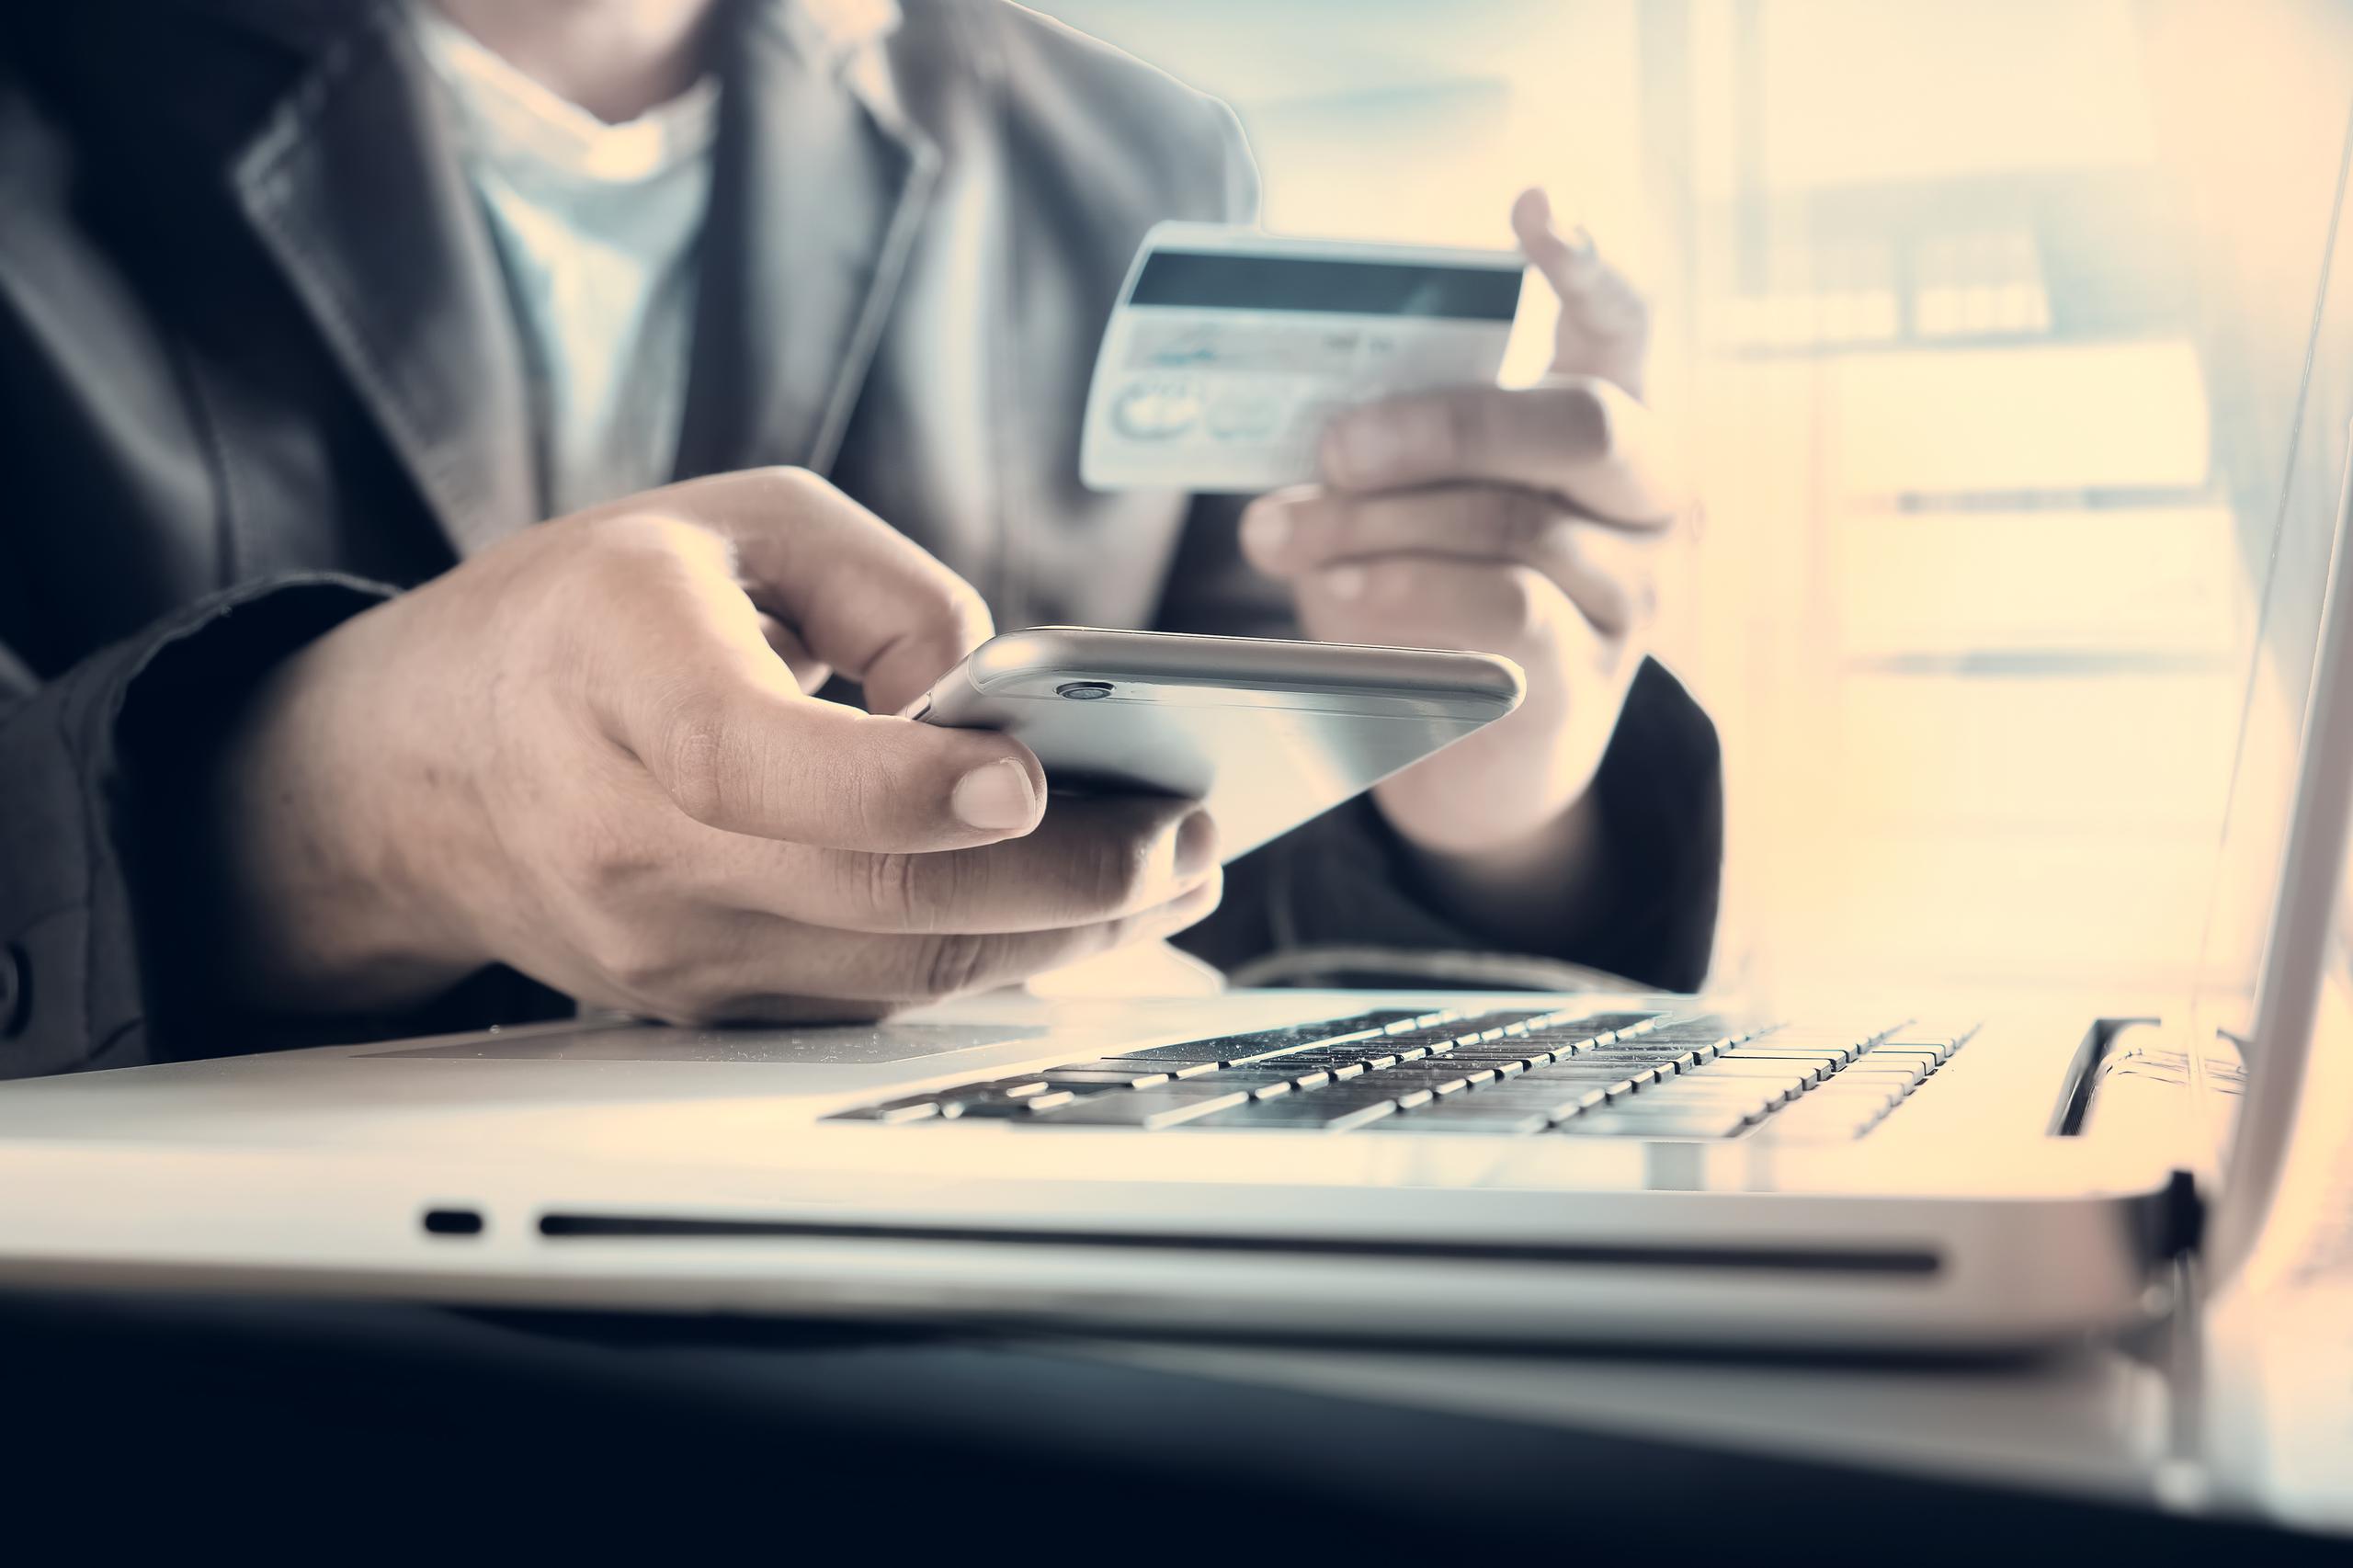 Un hombre sostiene una tarjeta de crédito en la mano mientras realiza una transacción electrónica.